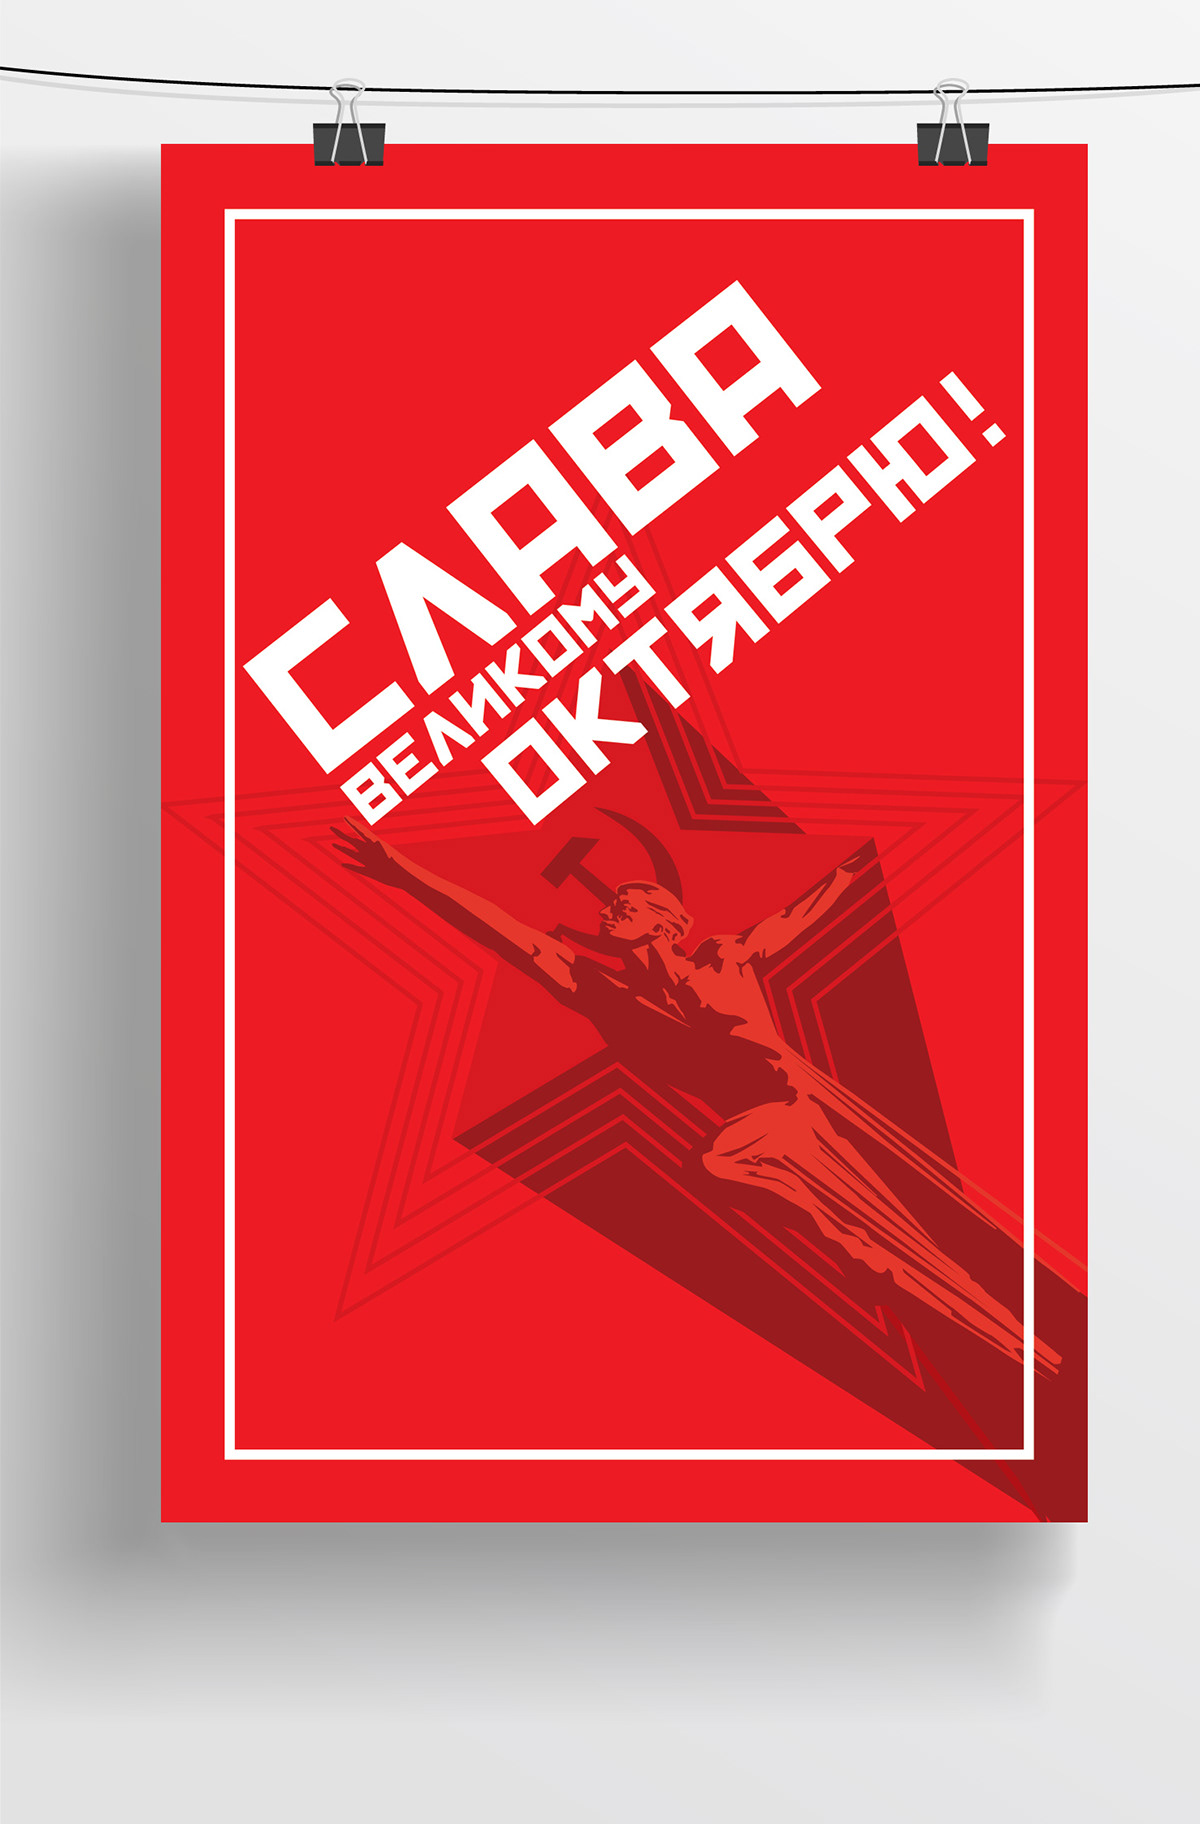 Soviet posters Propaganda minimal Lenin komunizm red